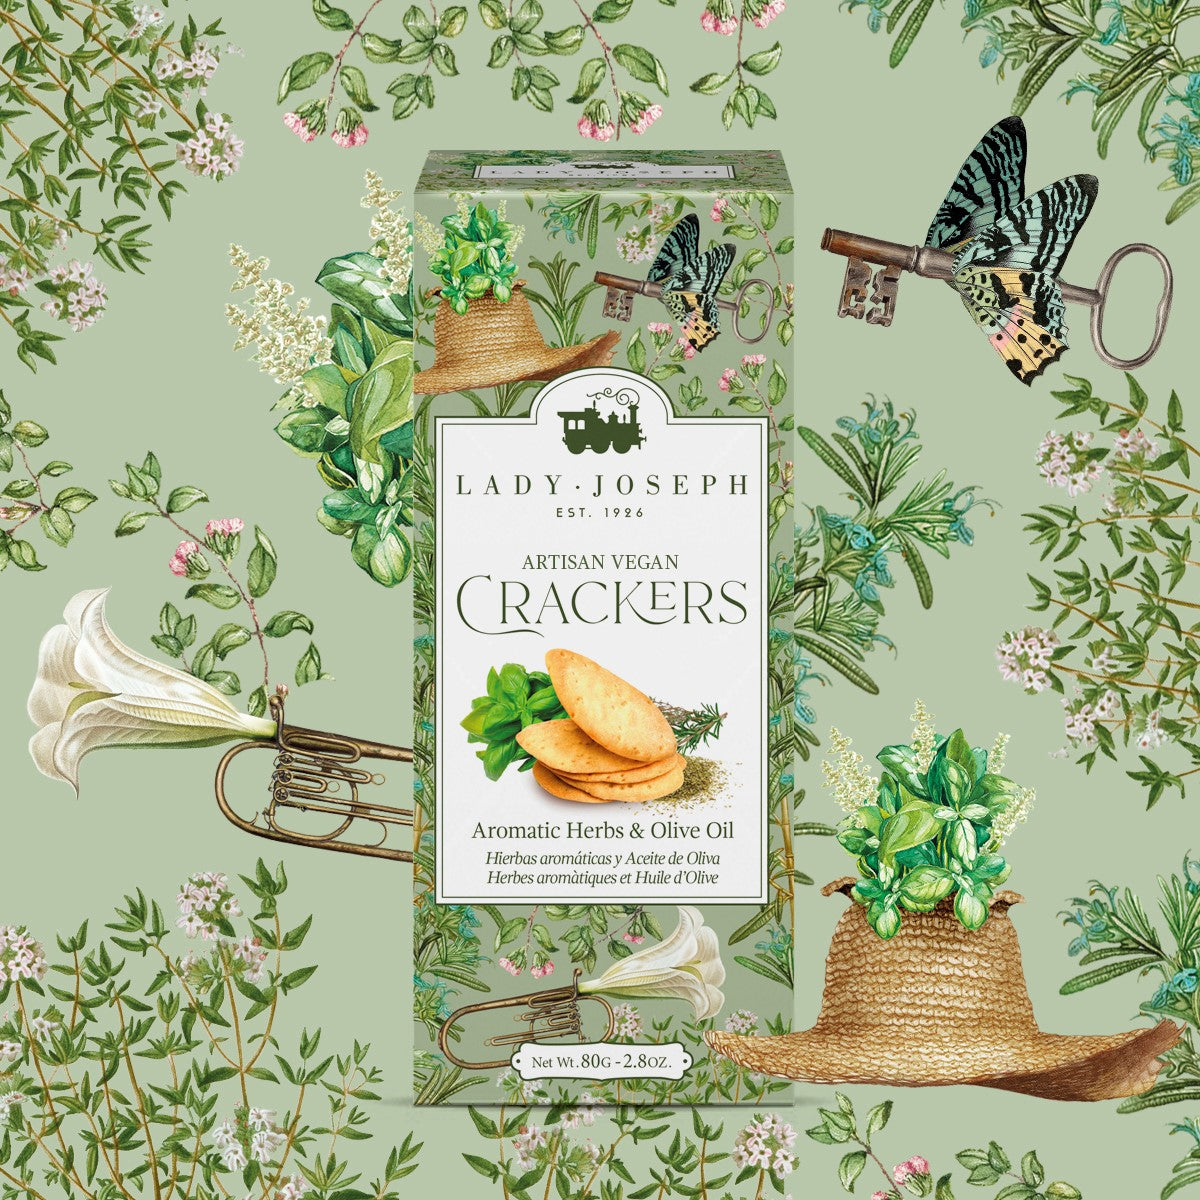 Crackers veganos artesanos con aceite de oliva y hierbas aromáticas.